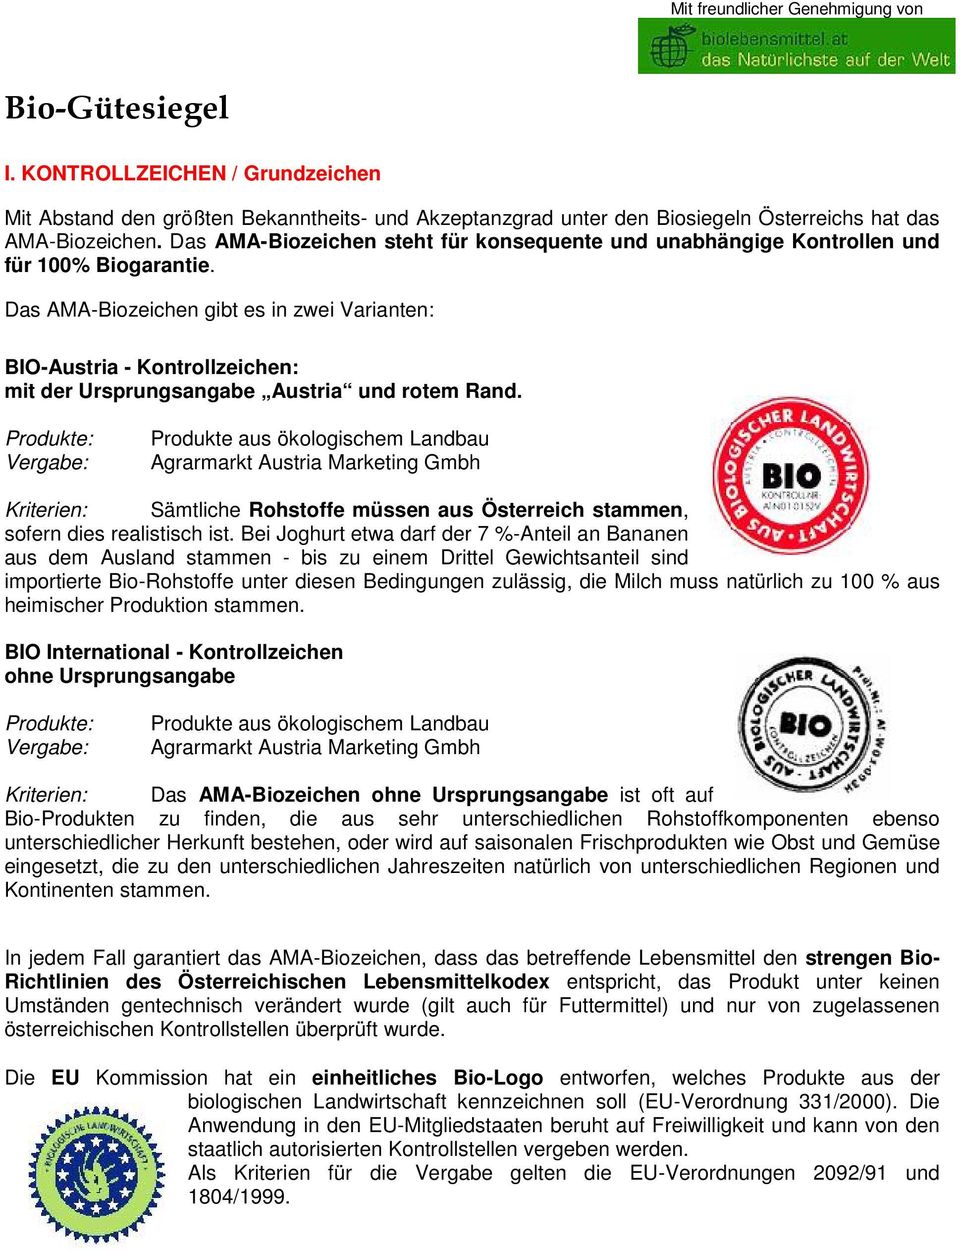 Das AMA-Biozeichen gibt es in zwei Varianten: BIO-Austria - Kontrollzeichen: mit der Ursprungsangabe Austria und rotem Rand.